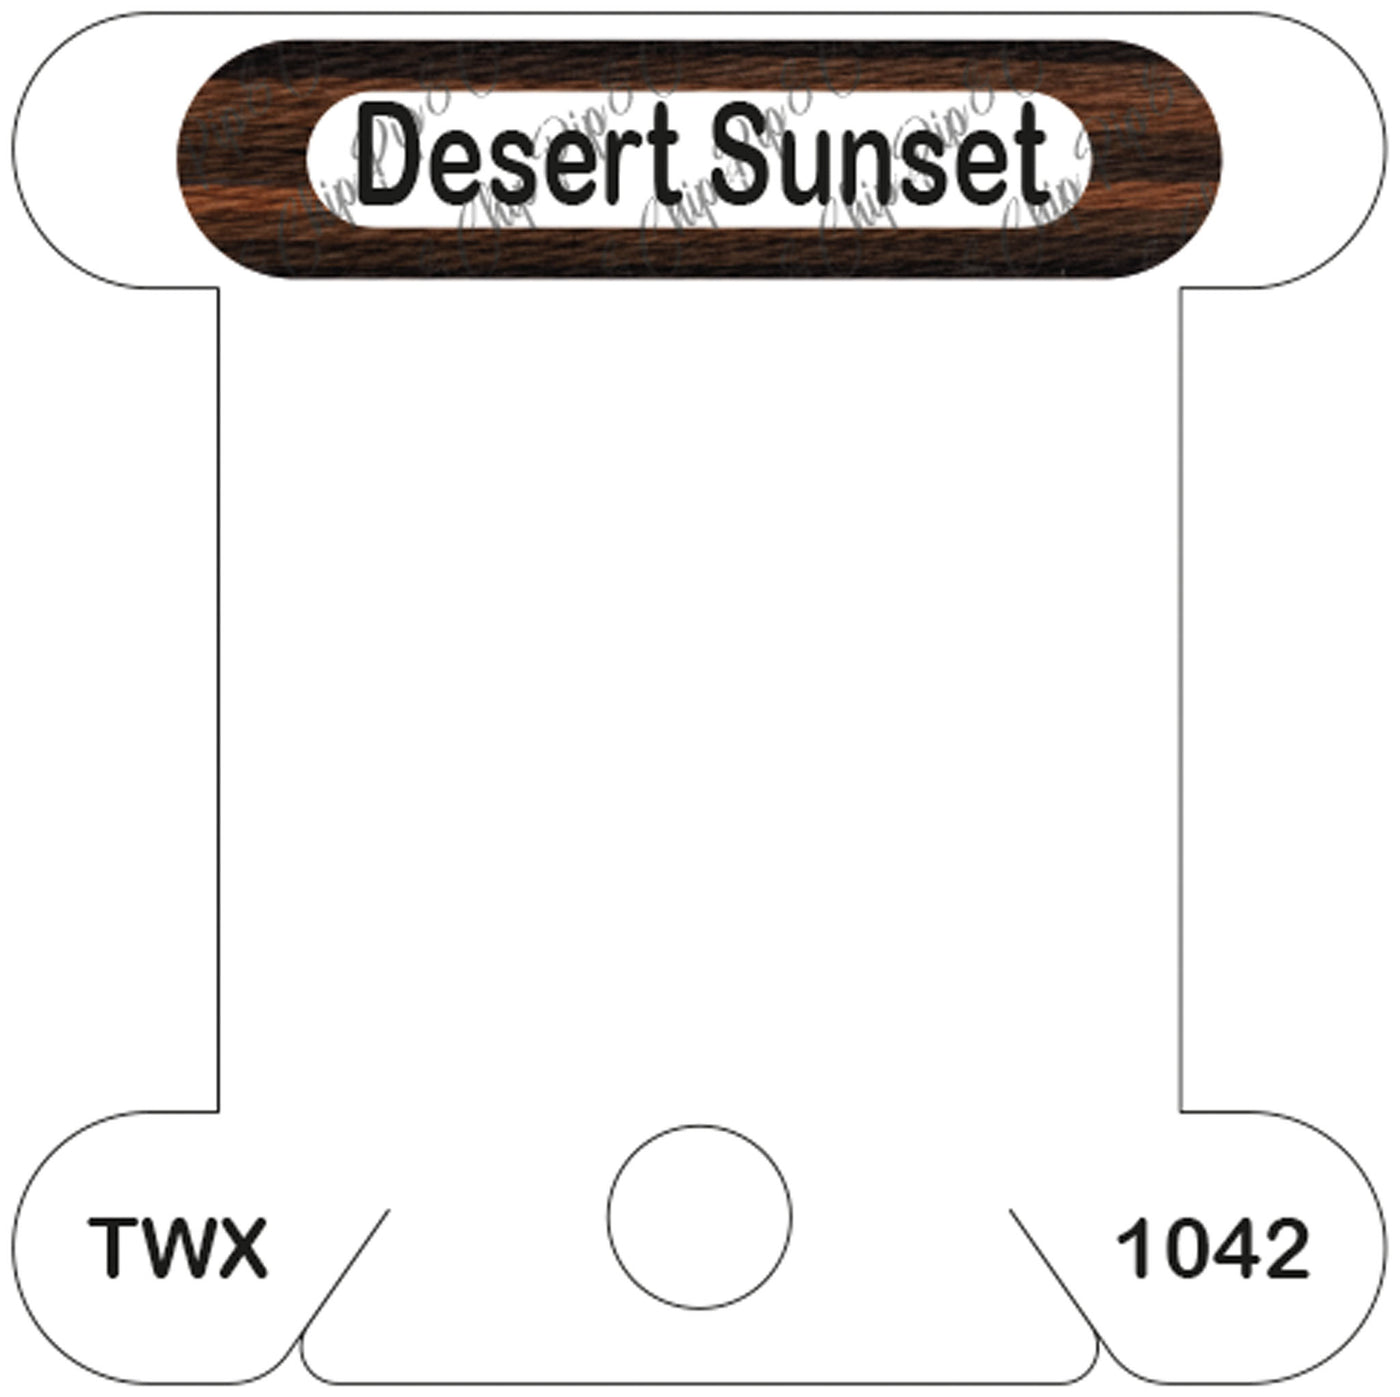 ThreadworX Desert Sunset acrylic bobbin